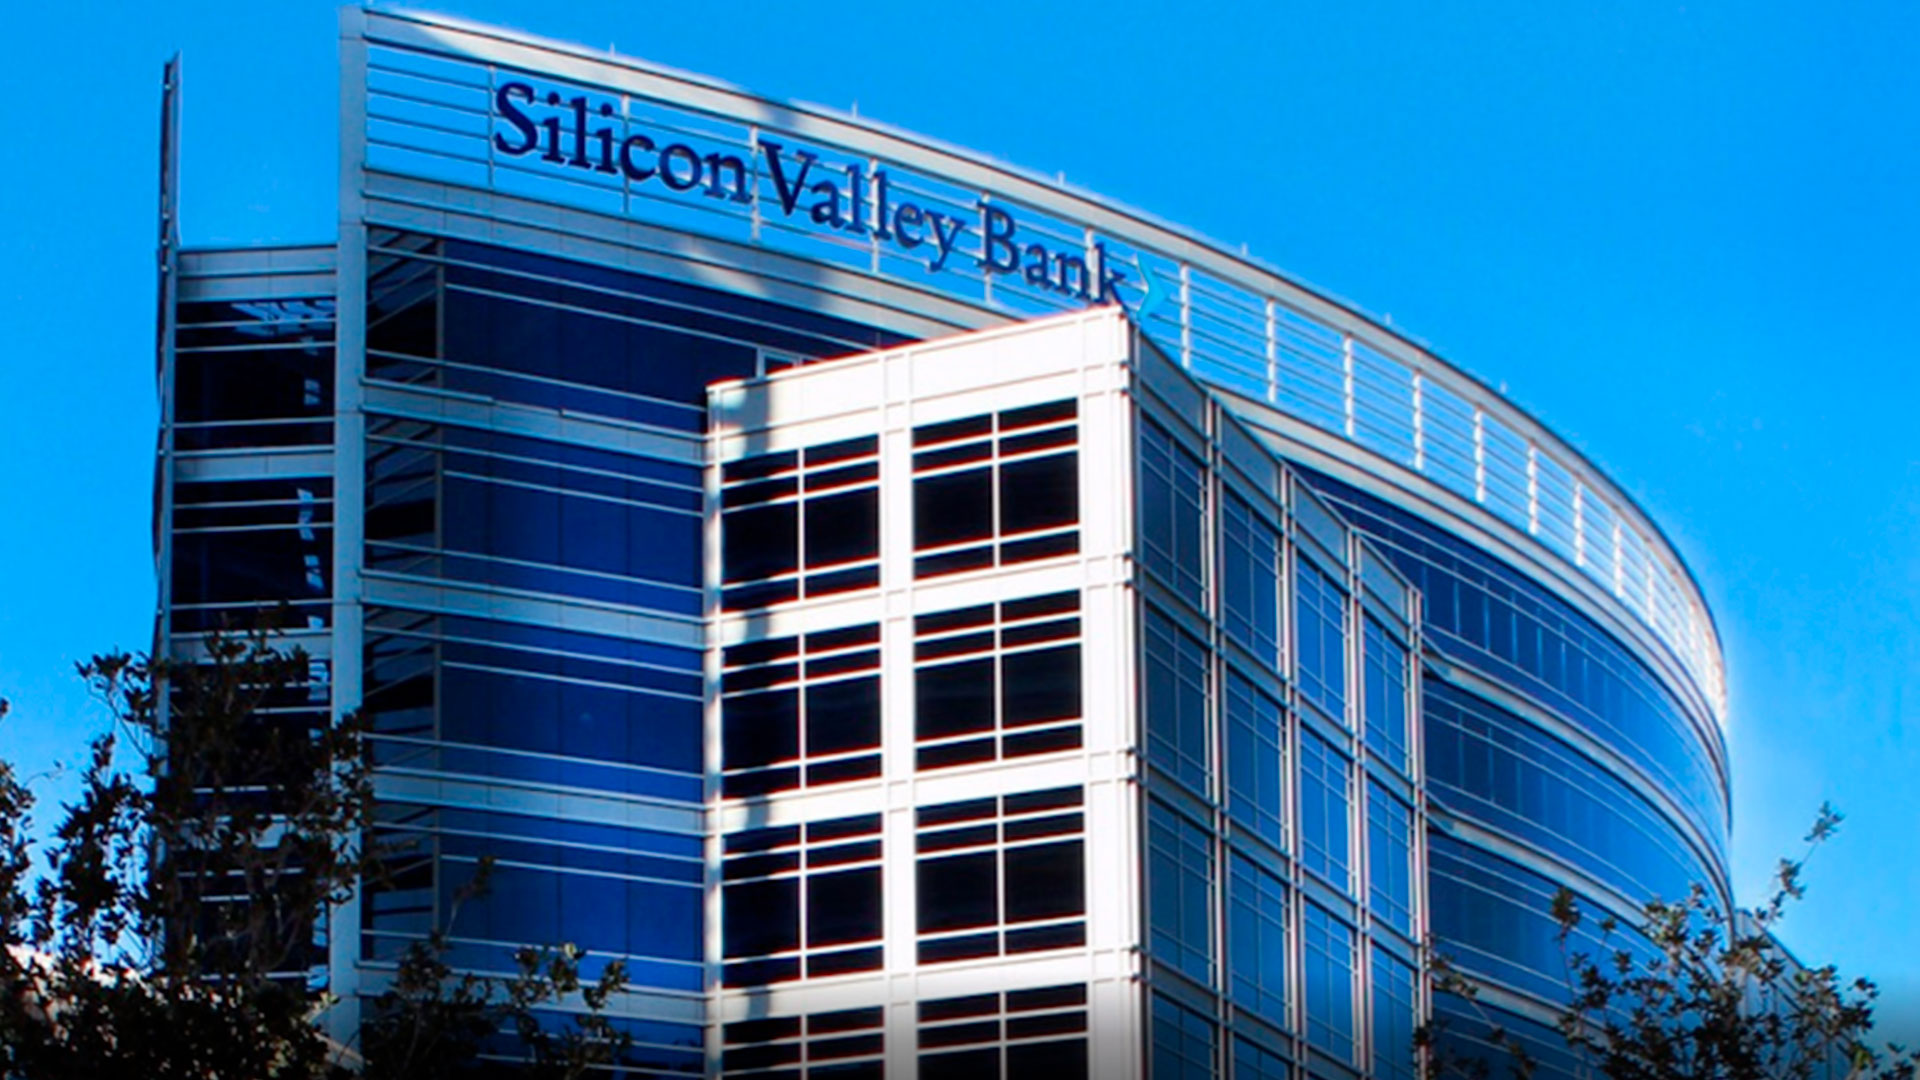 Se derrumbaron las acciones del banco que financia a Silicon Valley tras una maniobra para apuntalar su balance